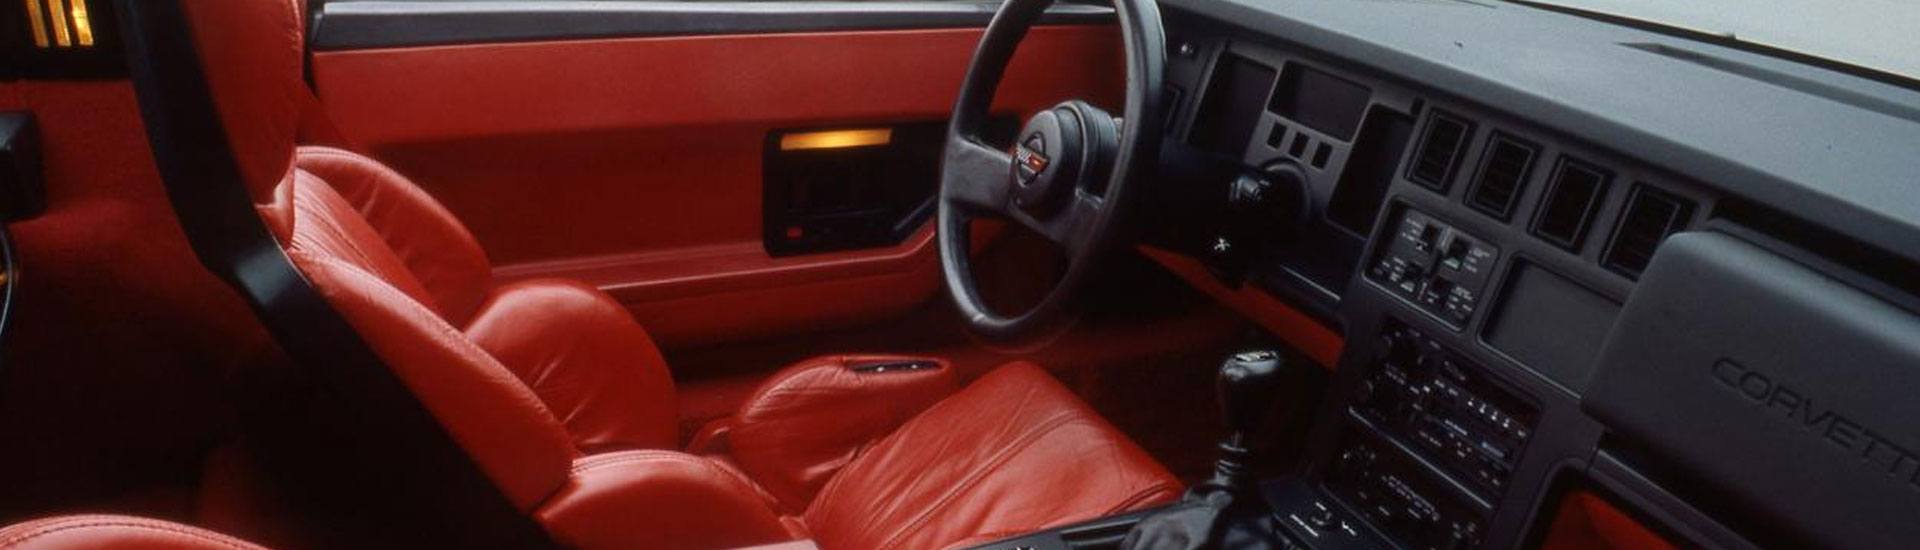 1989 Chevrolet Corvette Dash Kits